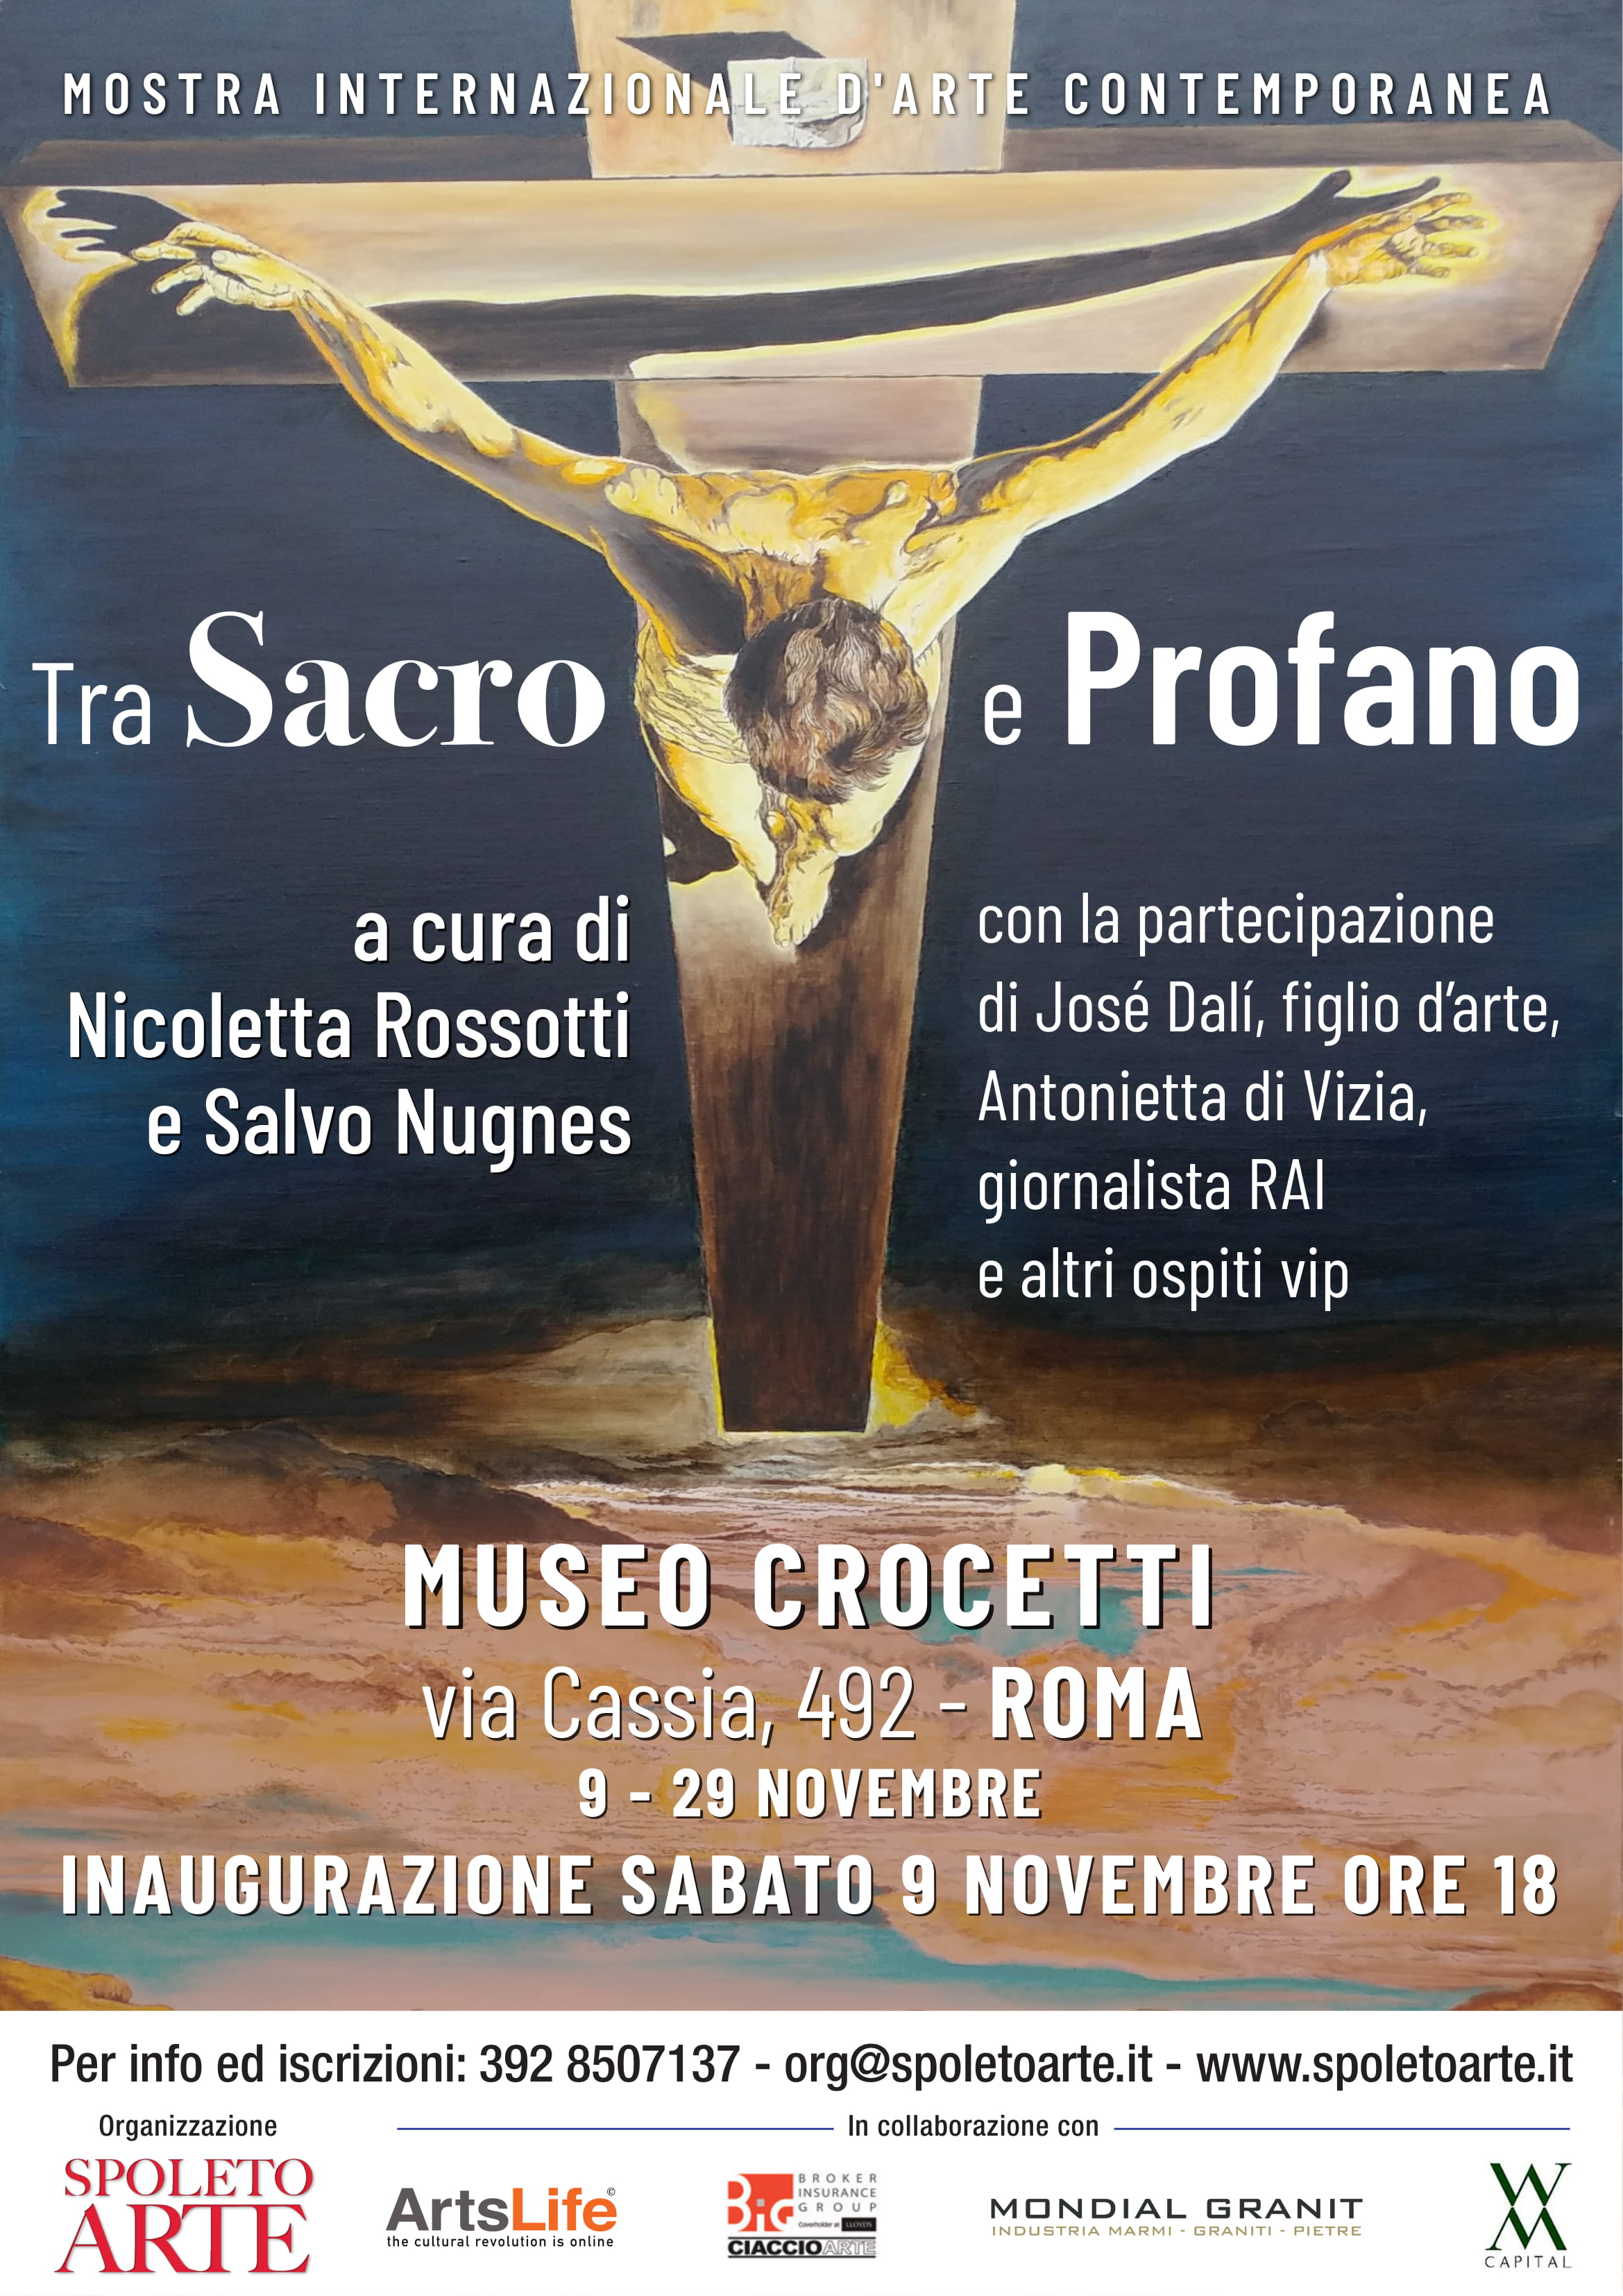 La mostra Tra sacro e profano inaugura al Museo Crocetti con la curatela di Nicoletta Rossotti e Salvo Nugnes